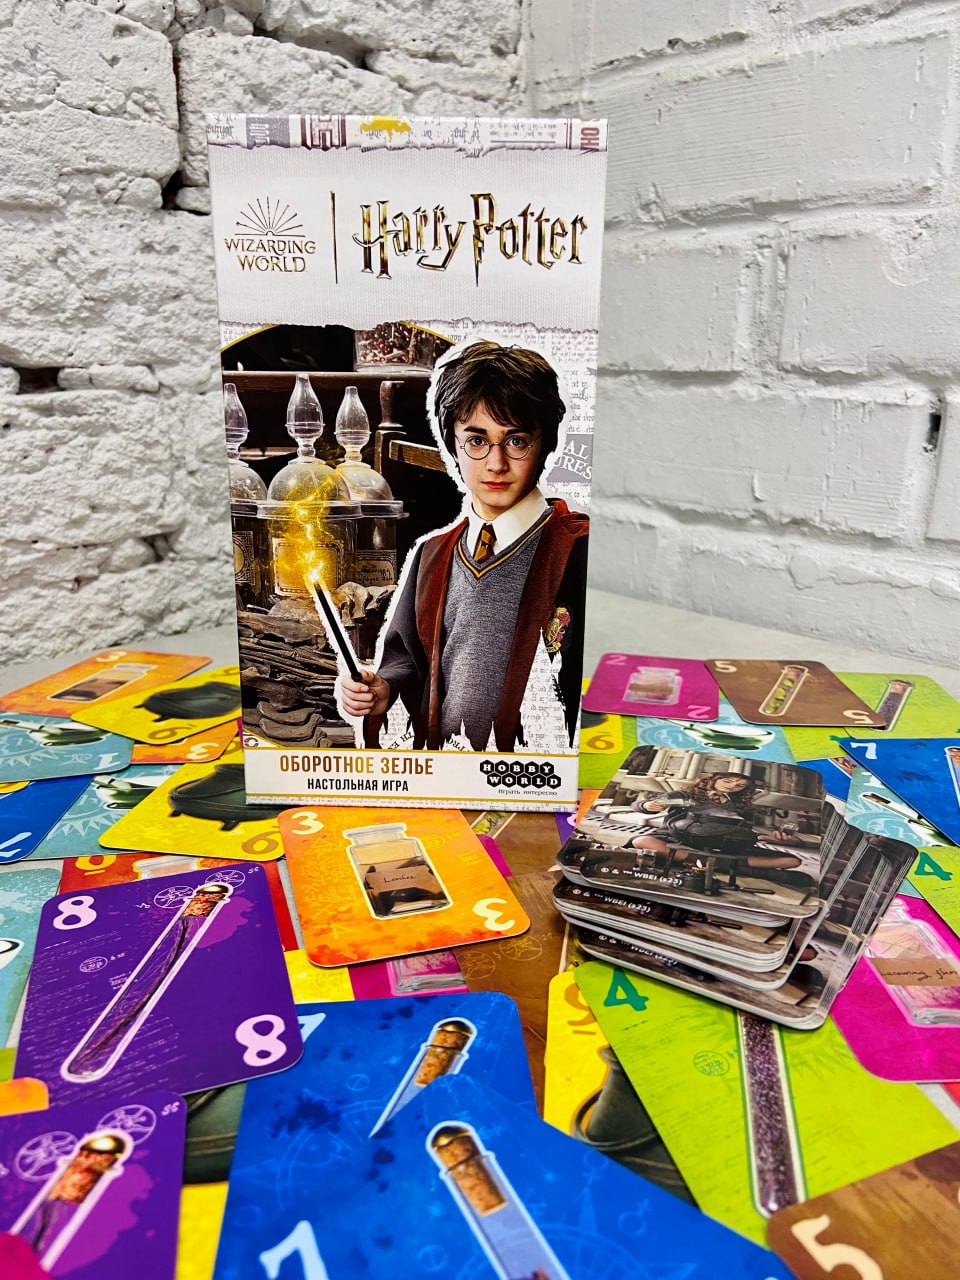 «Гарри Поттер: Оборотное зелье» - в продаже